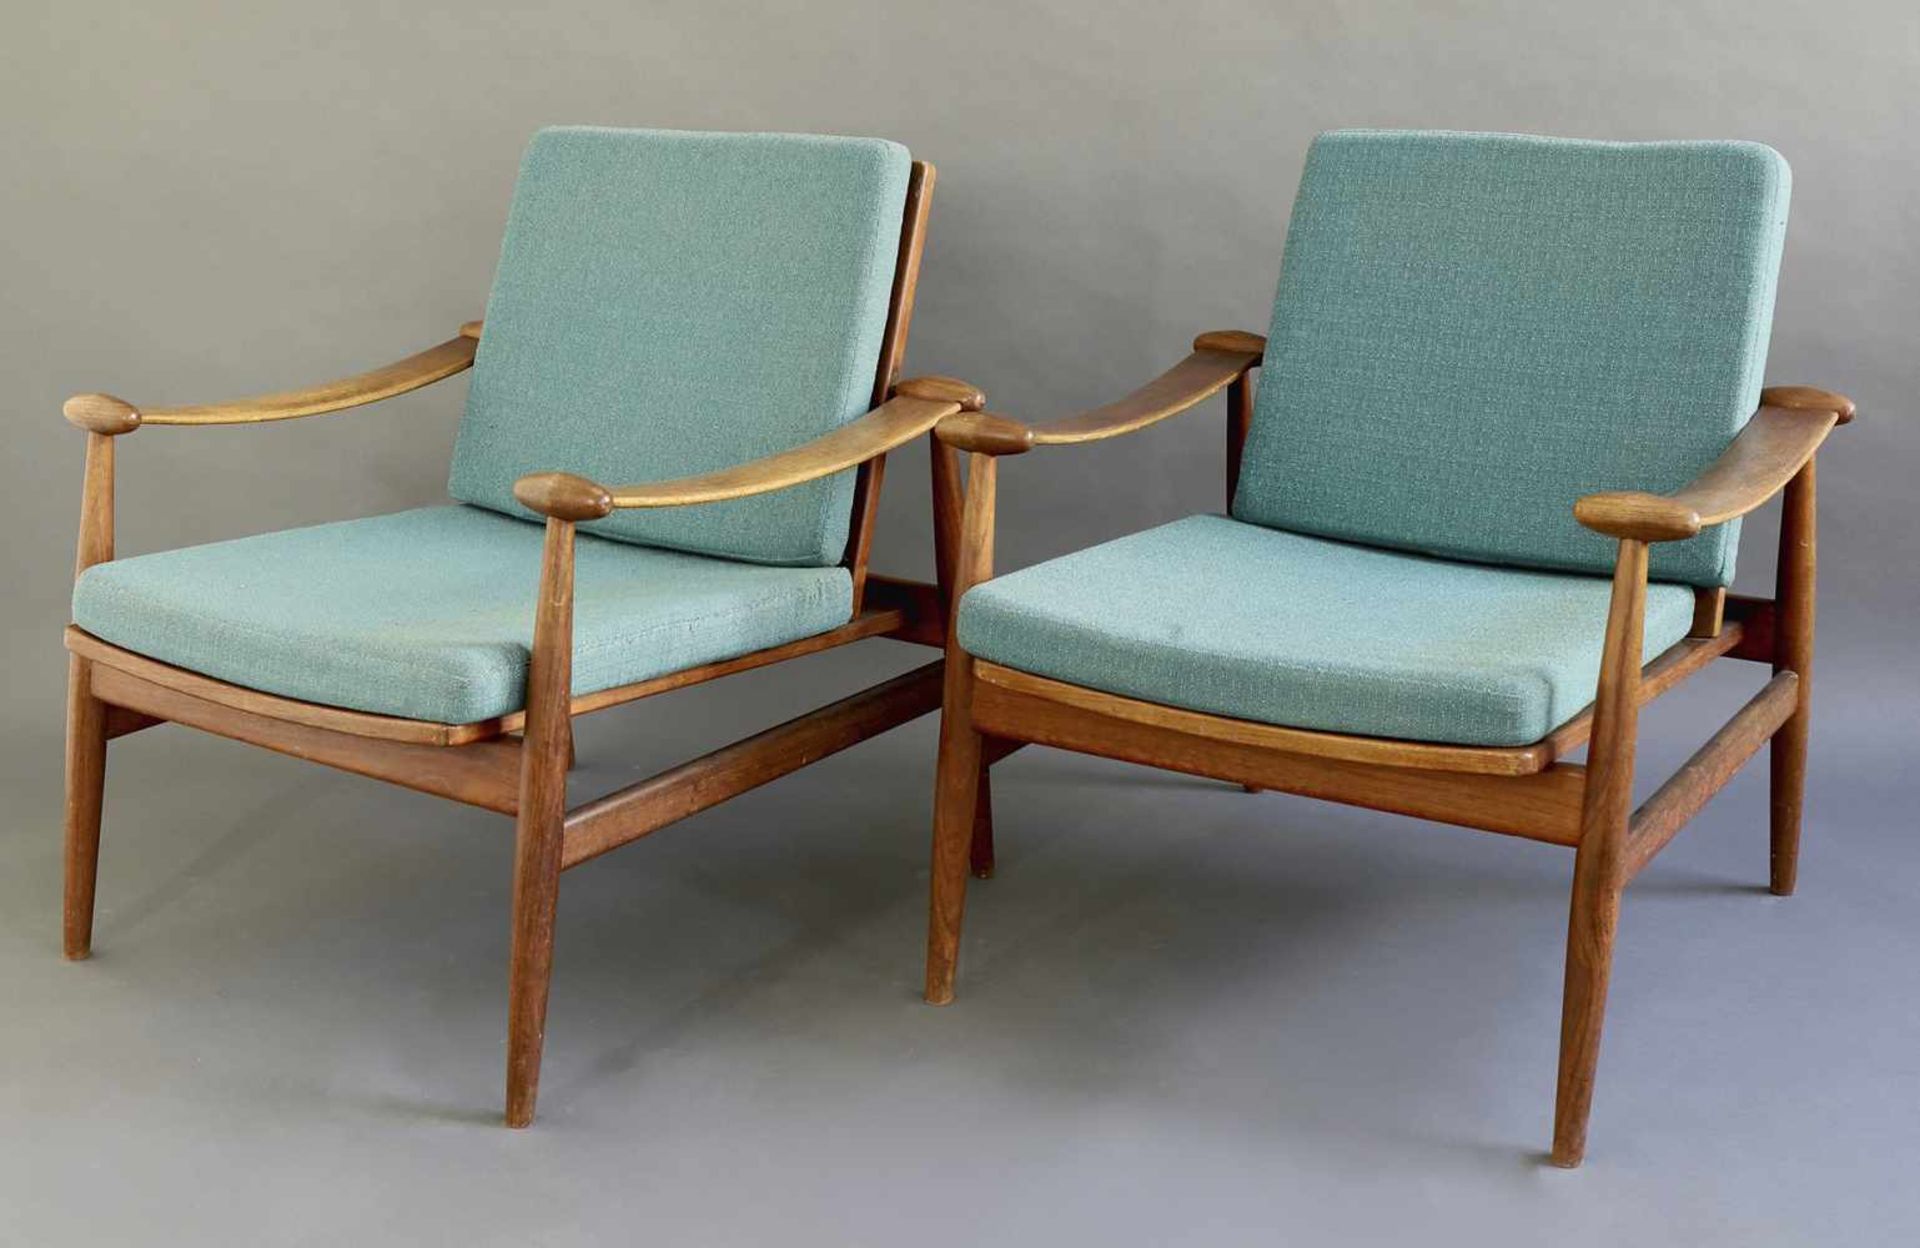 Finn JuhlFrance & Son, KopenhagenFinn Juhl 2 Easy Chairs Mod. 133 Spade2 armchairs model 133